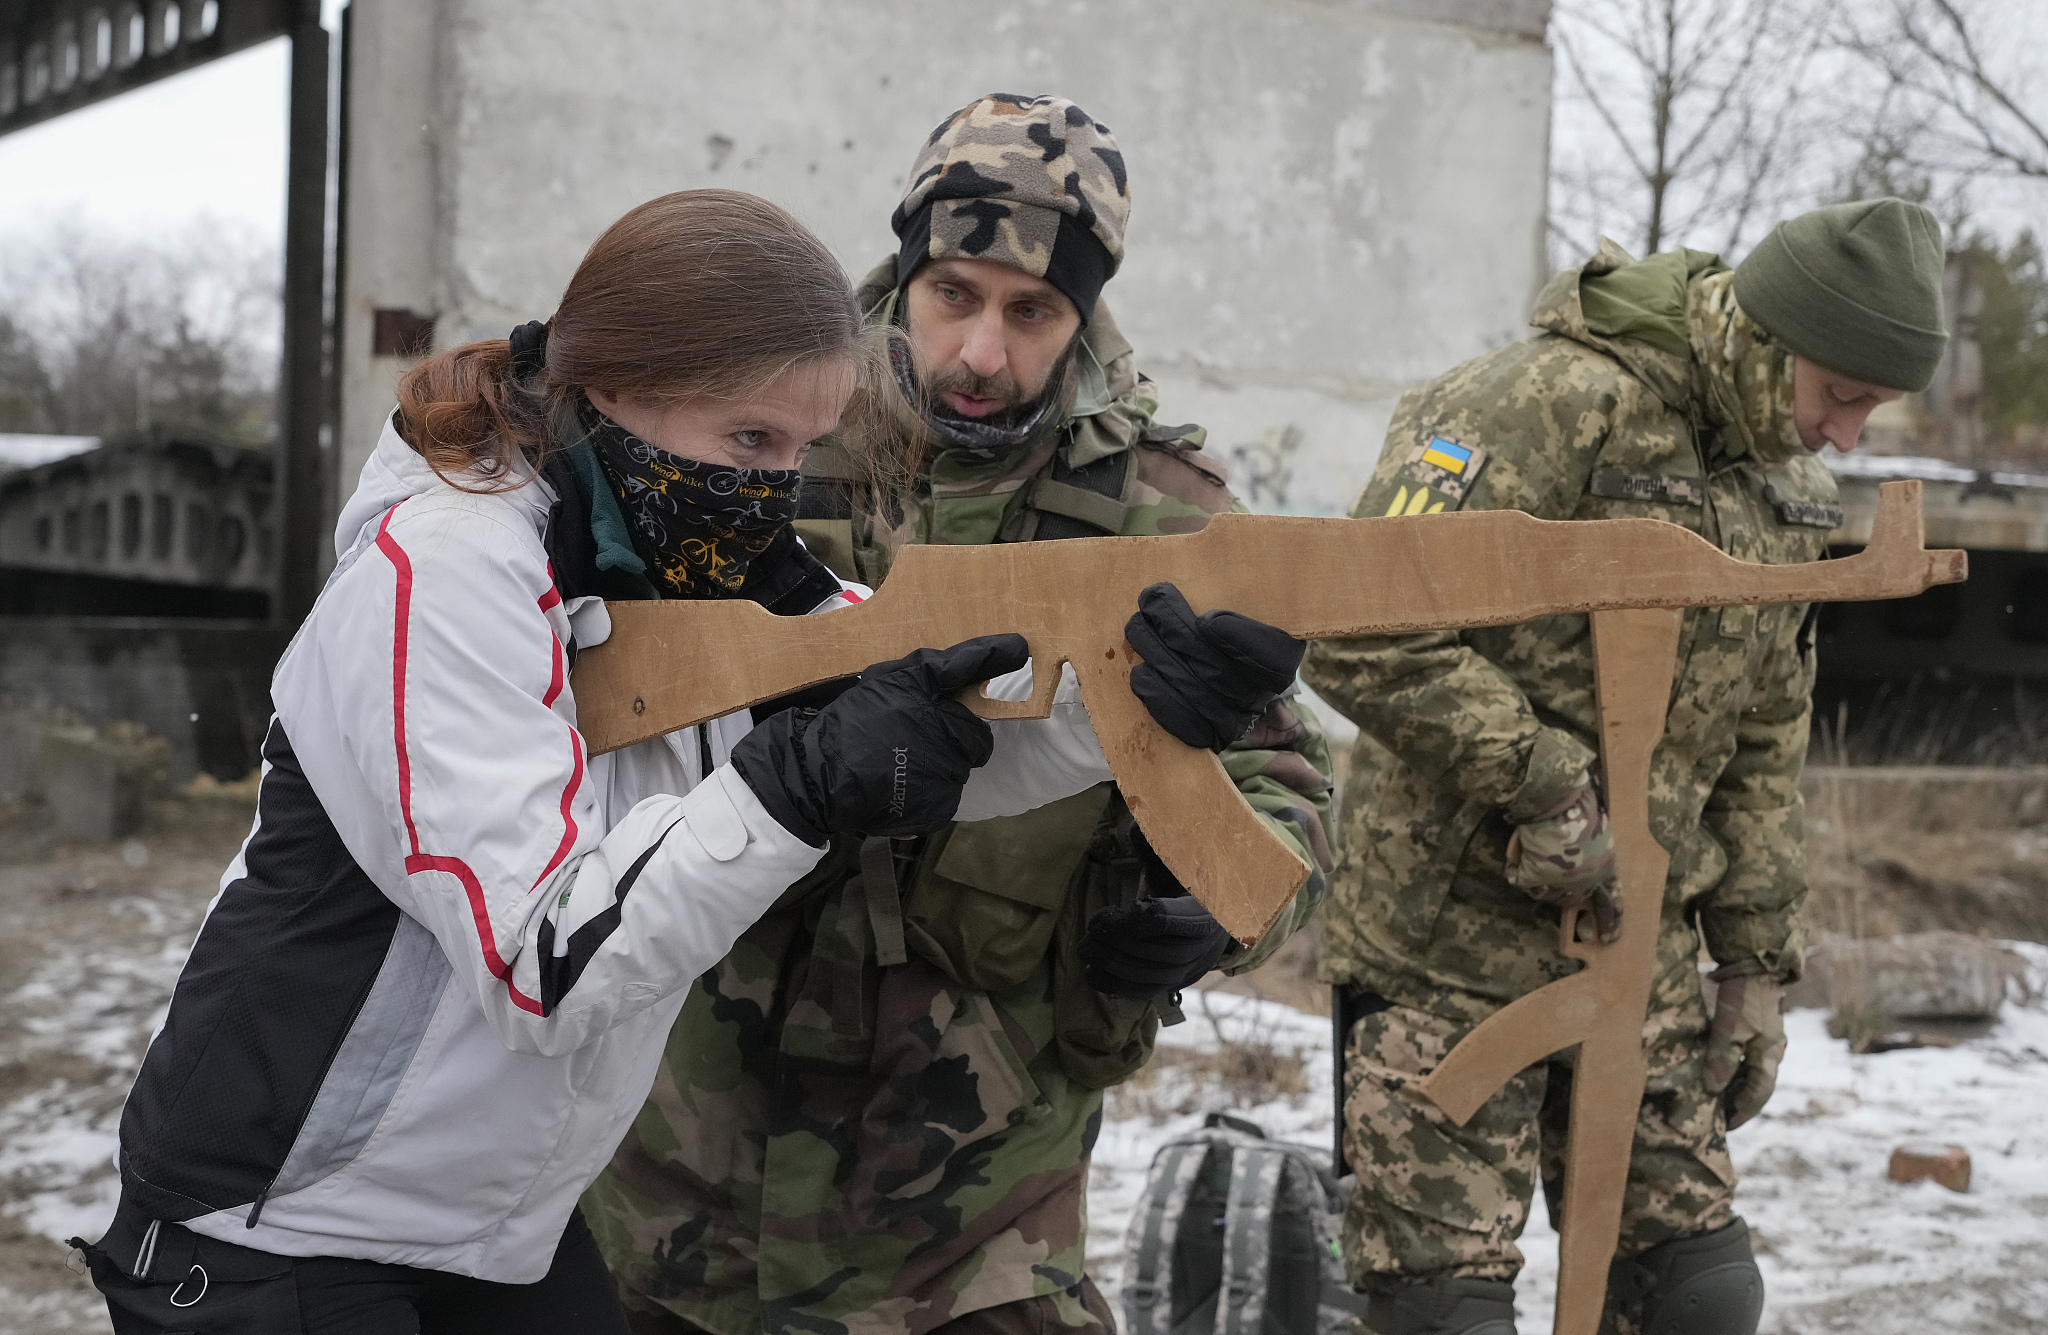 阅兵仪式上的乌克兰女兵颜值都比较高